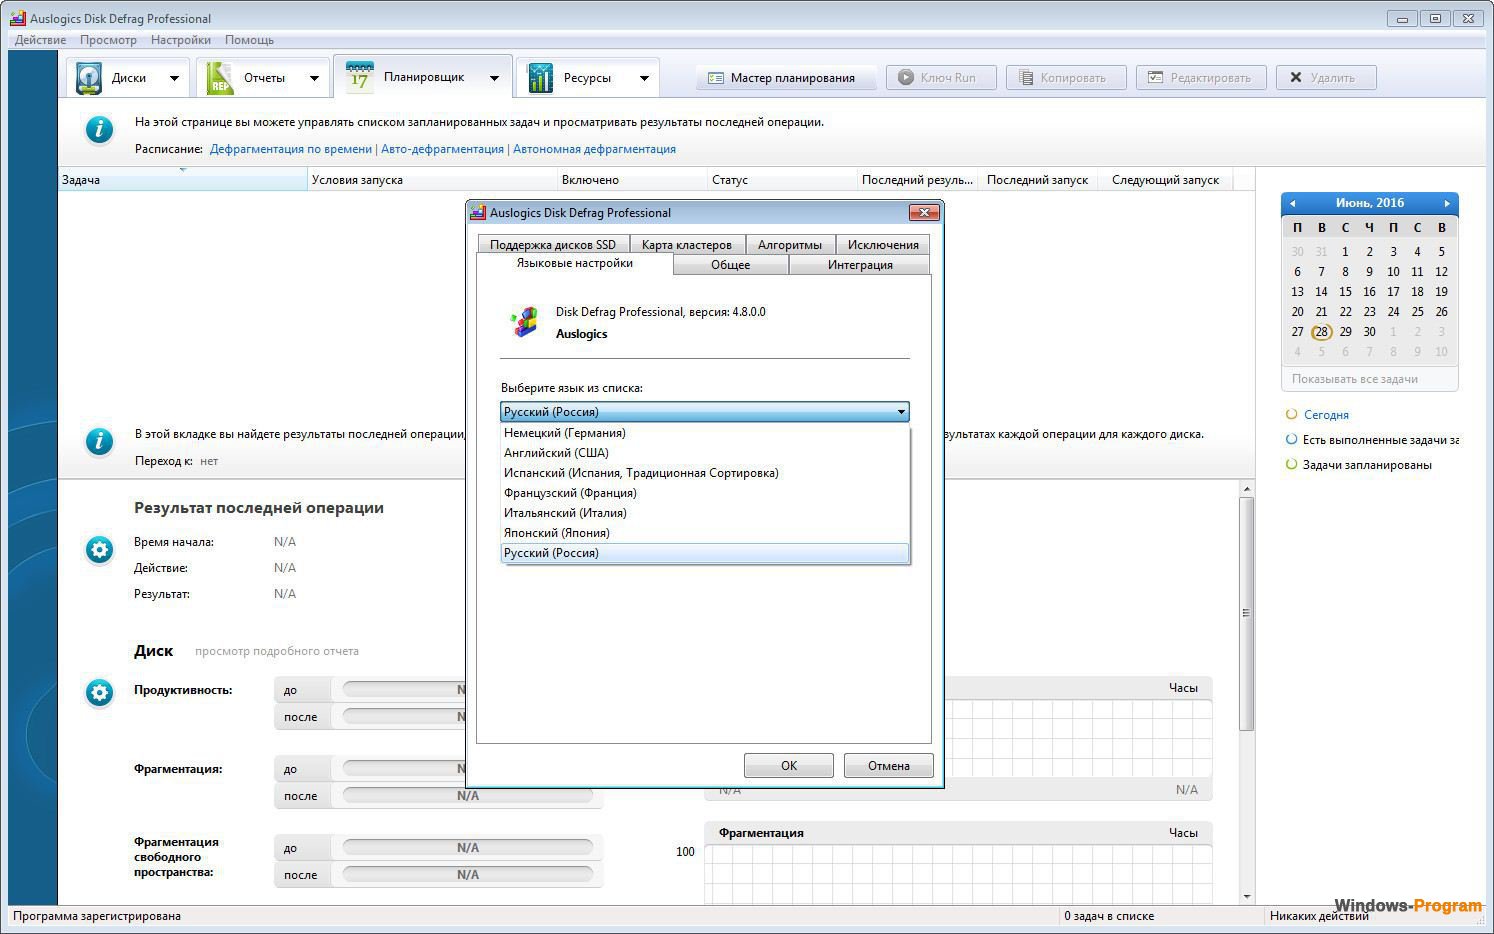 Auslogics Disk Defrag Pro 11.0.0.4 / Ultimate 4.13.0.1 for windows download free